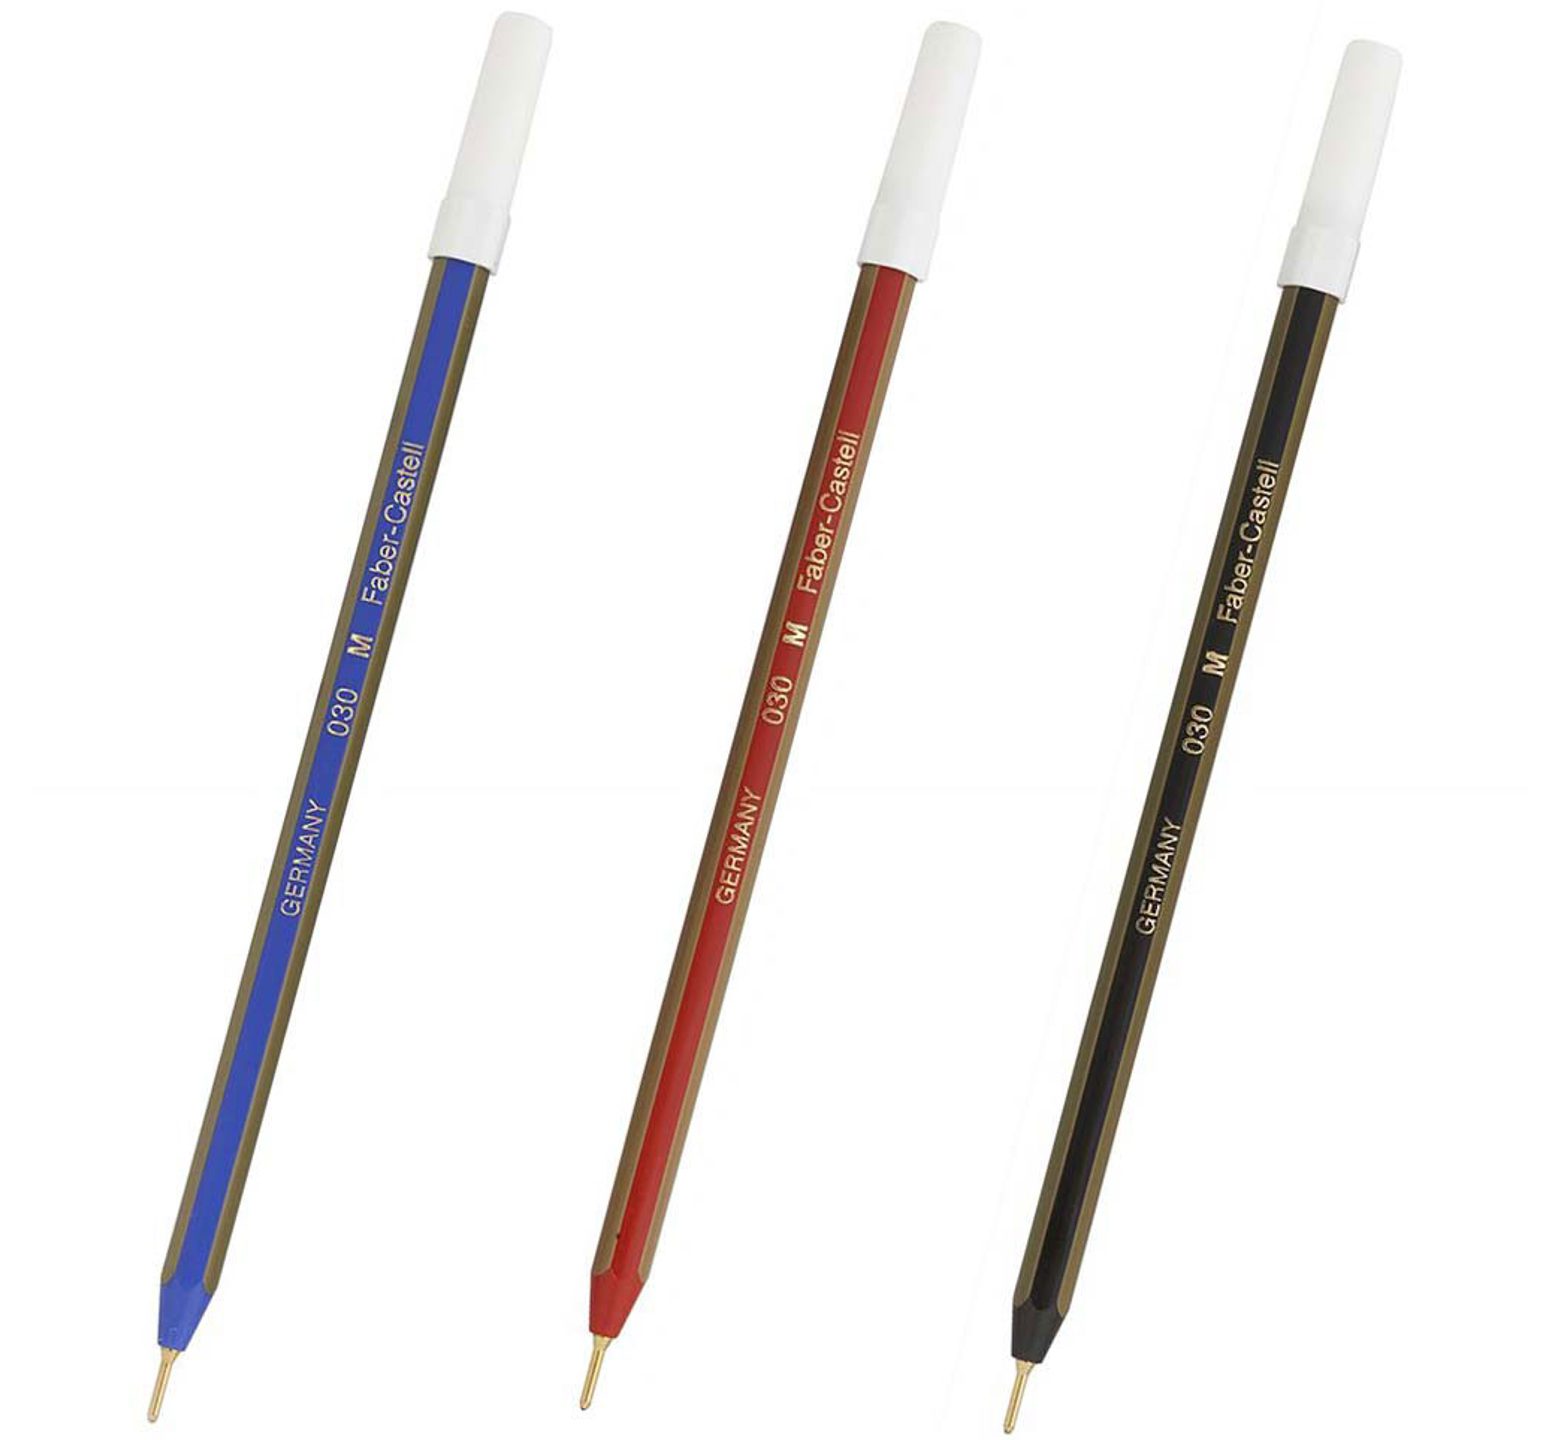 Στυλό Faber Castell Μ με εξάγωνο σώμα και πάχος γραφής 1,0mm για άψογη γραφή χωρίς διακοπές. Διατίθεται σε 3 χρώματα : μπλε, κόκκινο, μαύρο   